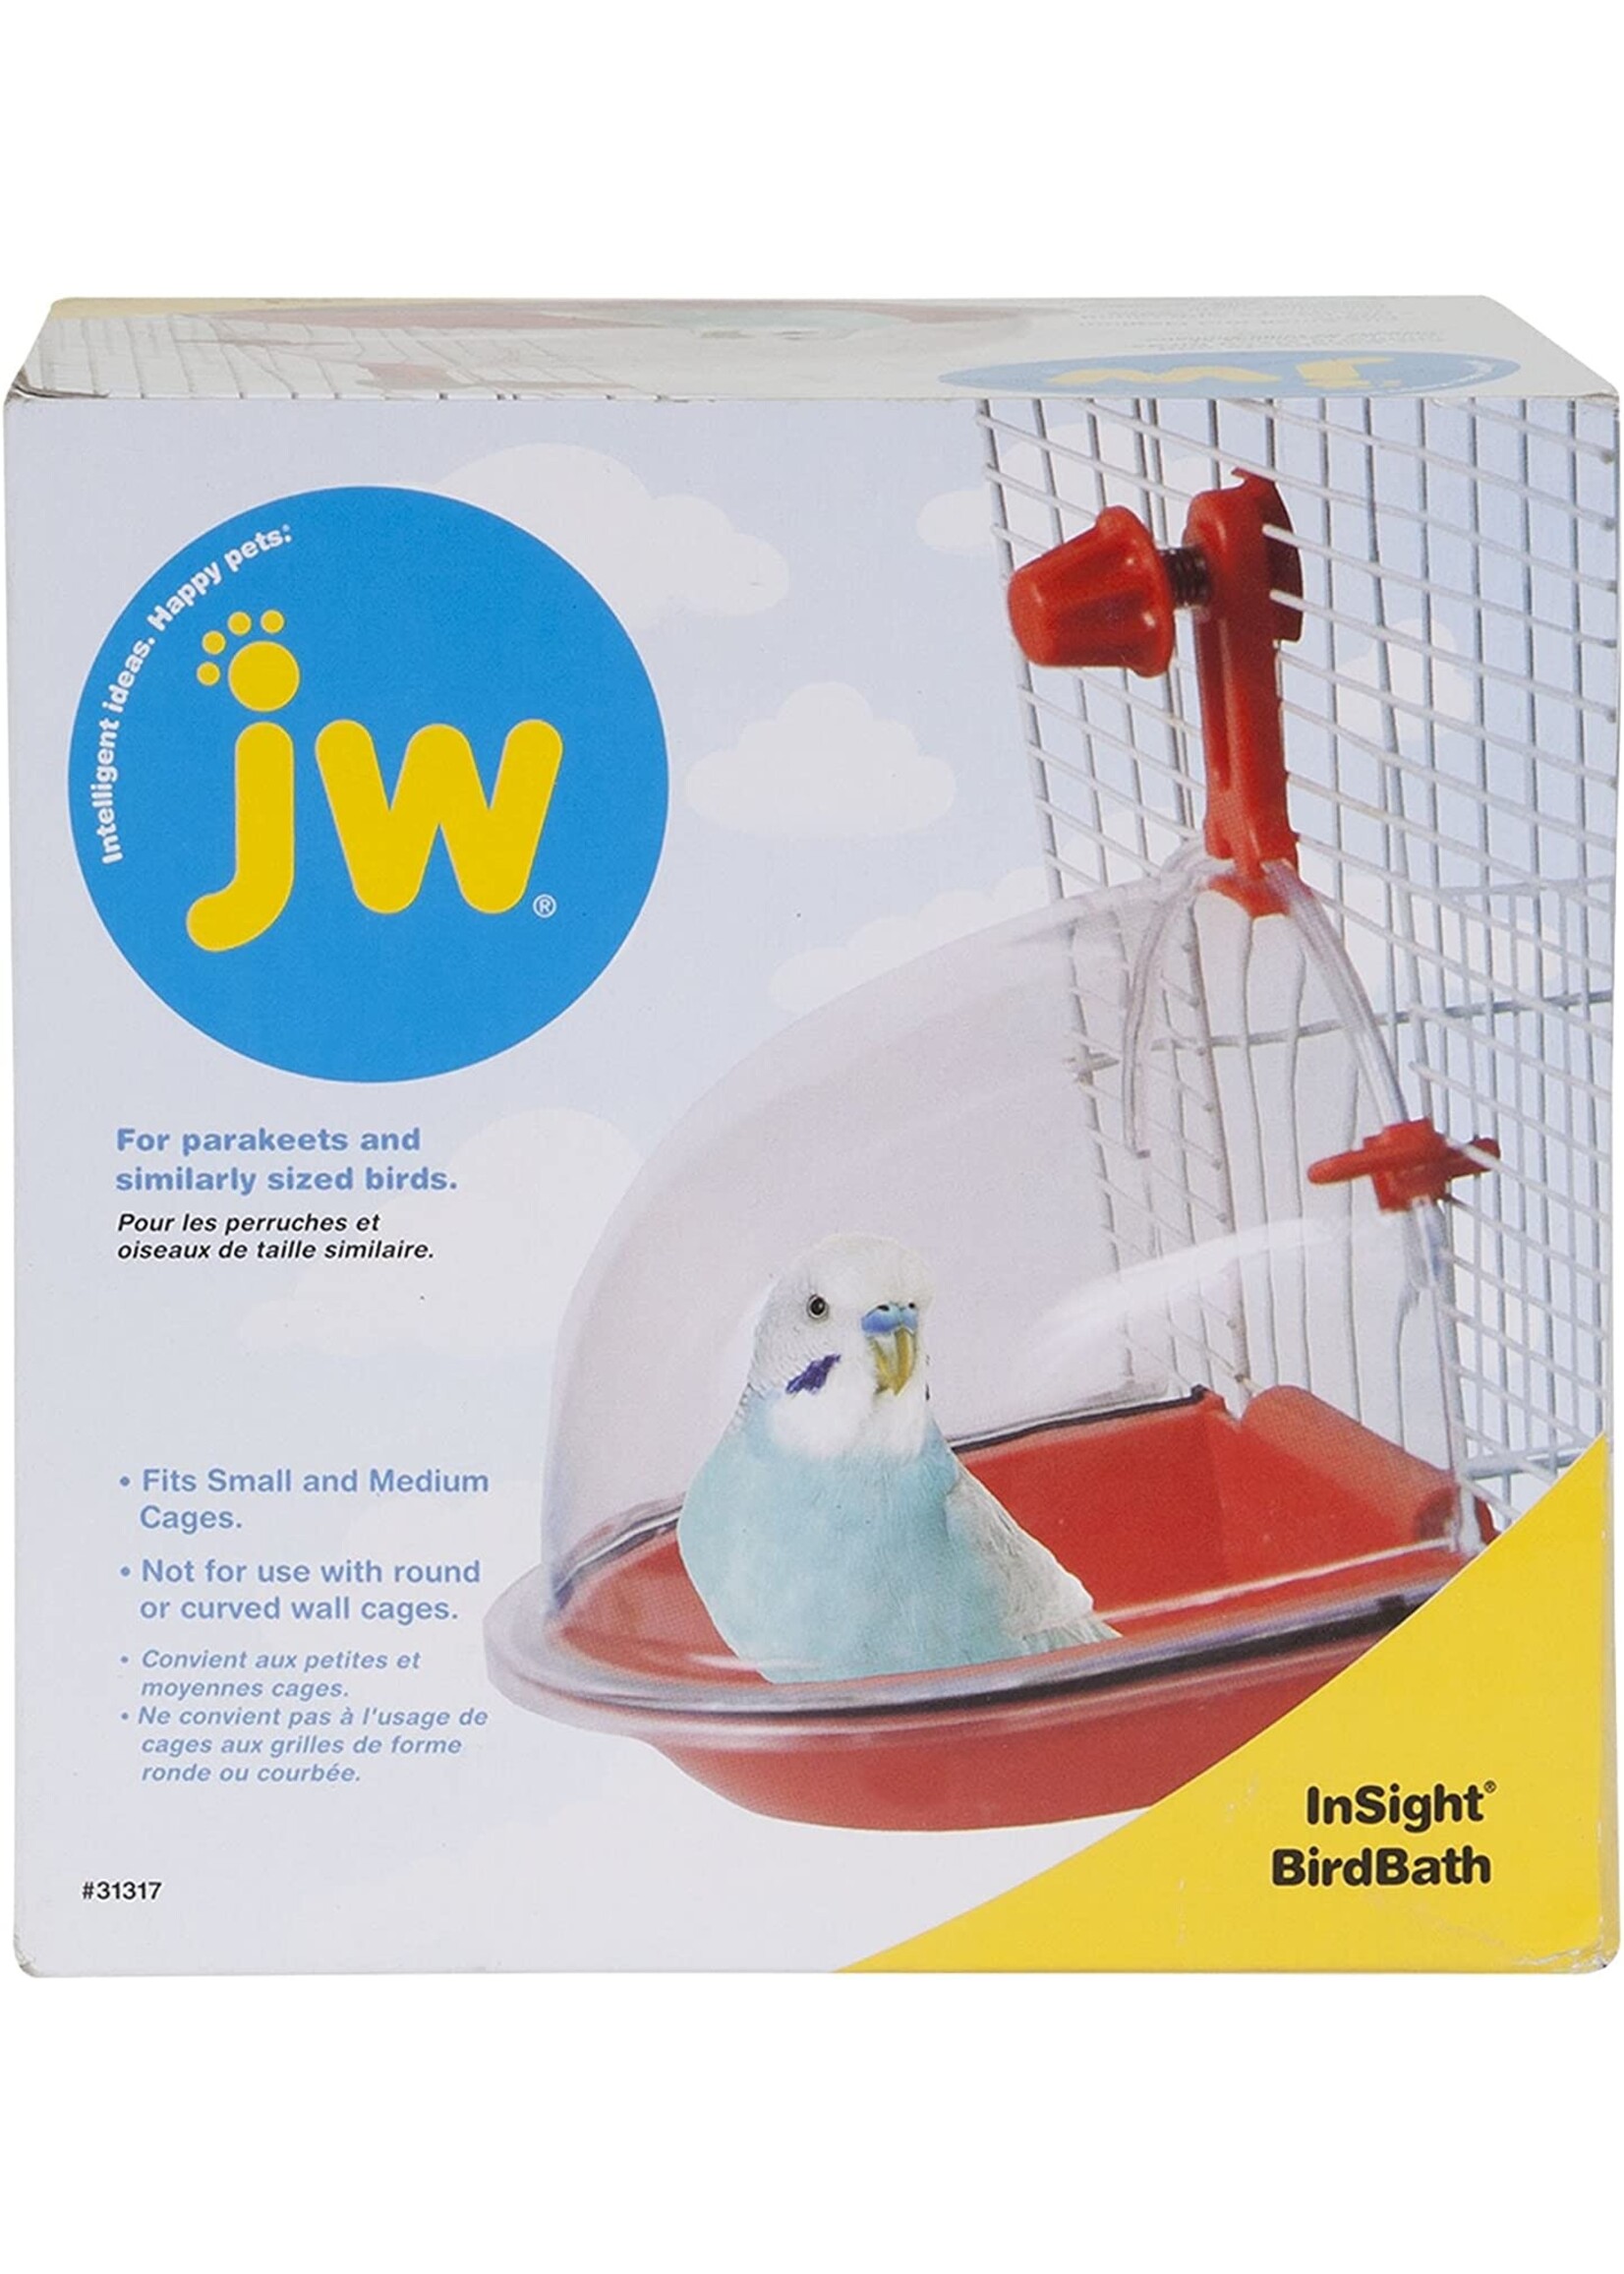 J.W. PET COMPANY JW / Insight - Bird Bath